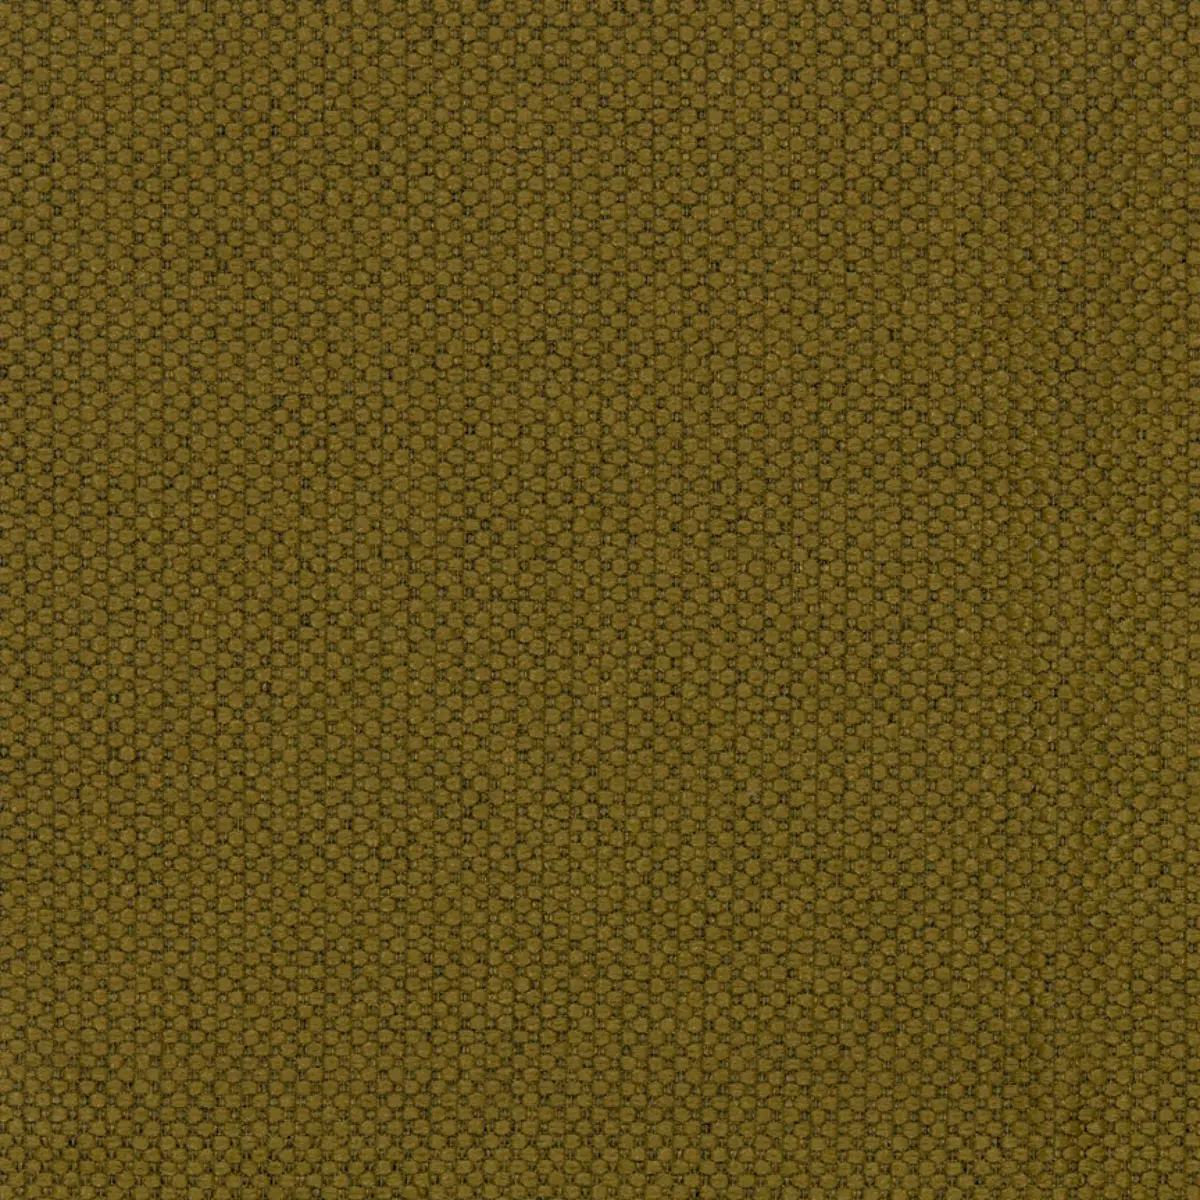 Fabric sample Merit 0027 brown